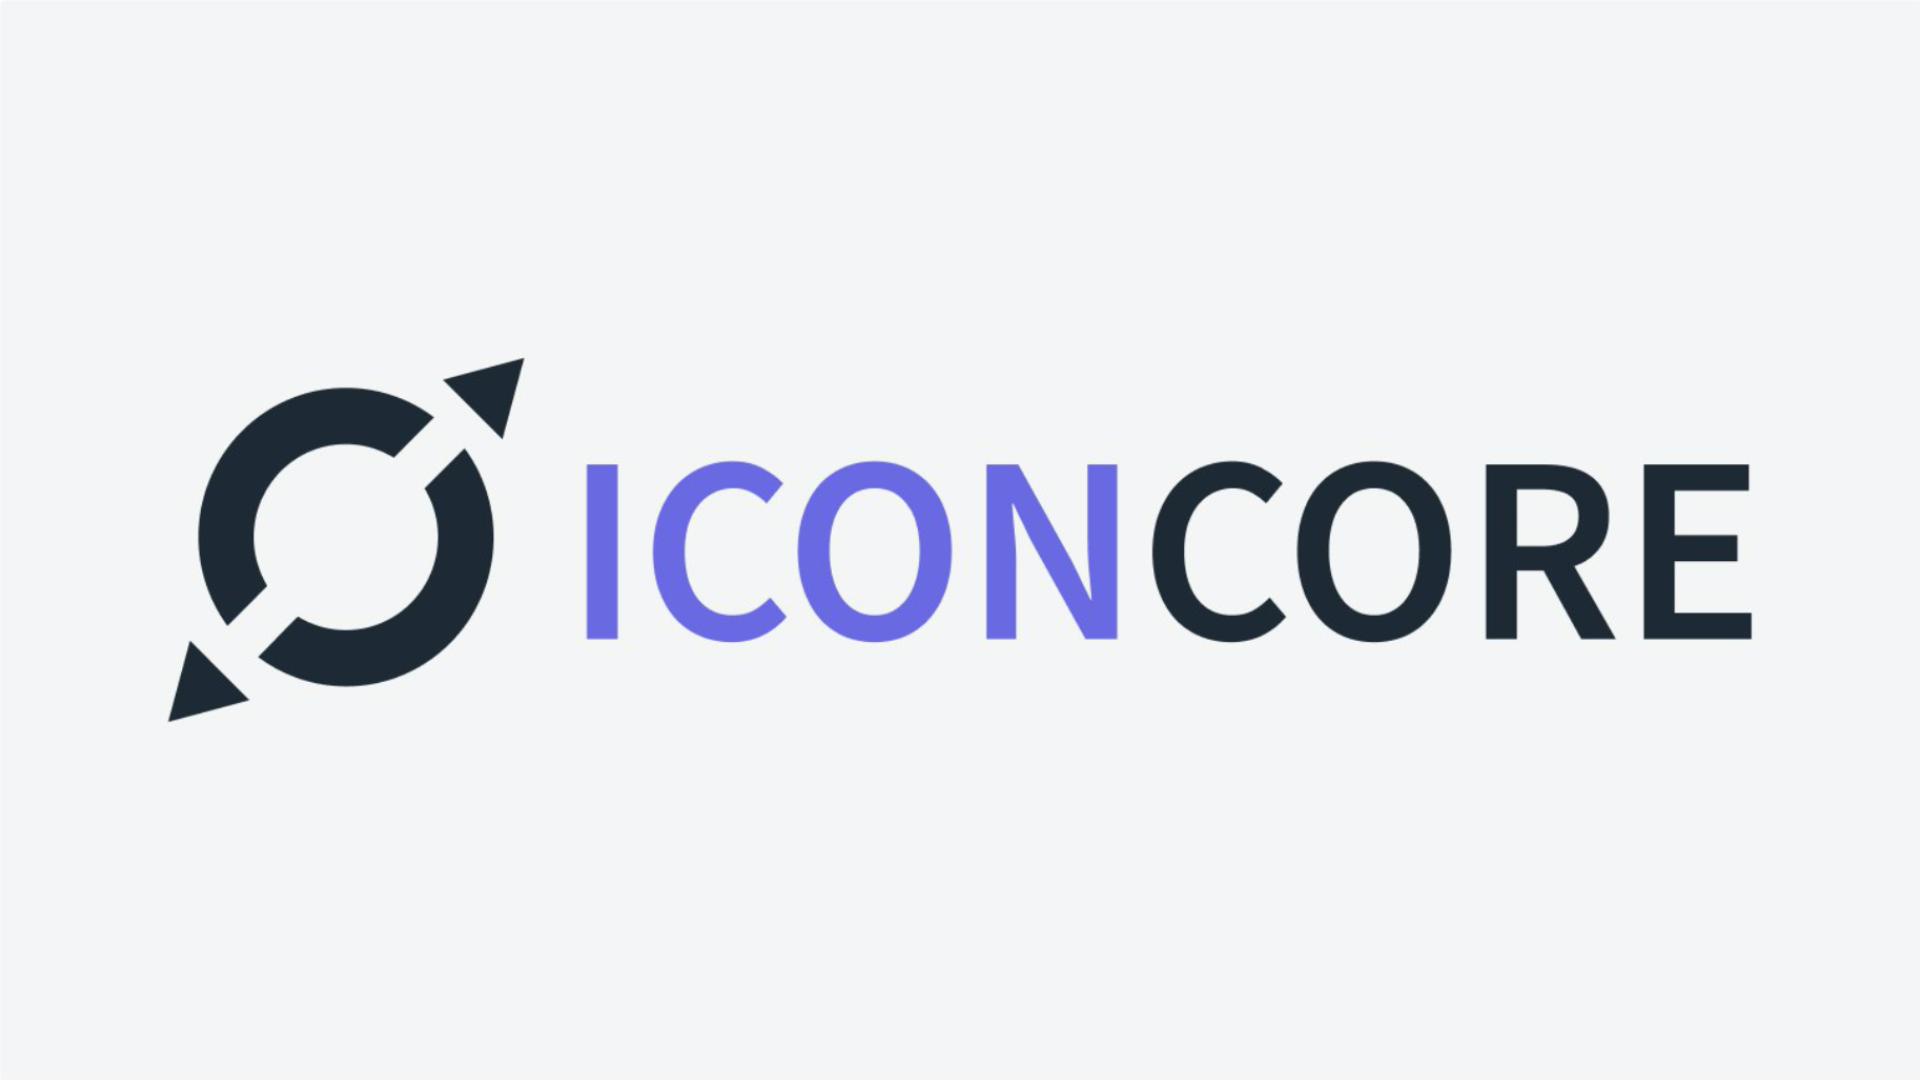 ICON CORE by RHIZOME, UBIK Capital, ICONation, and Sharpn